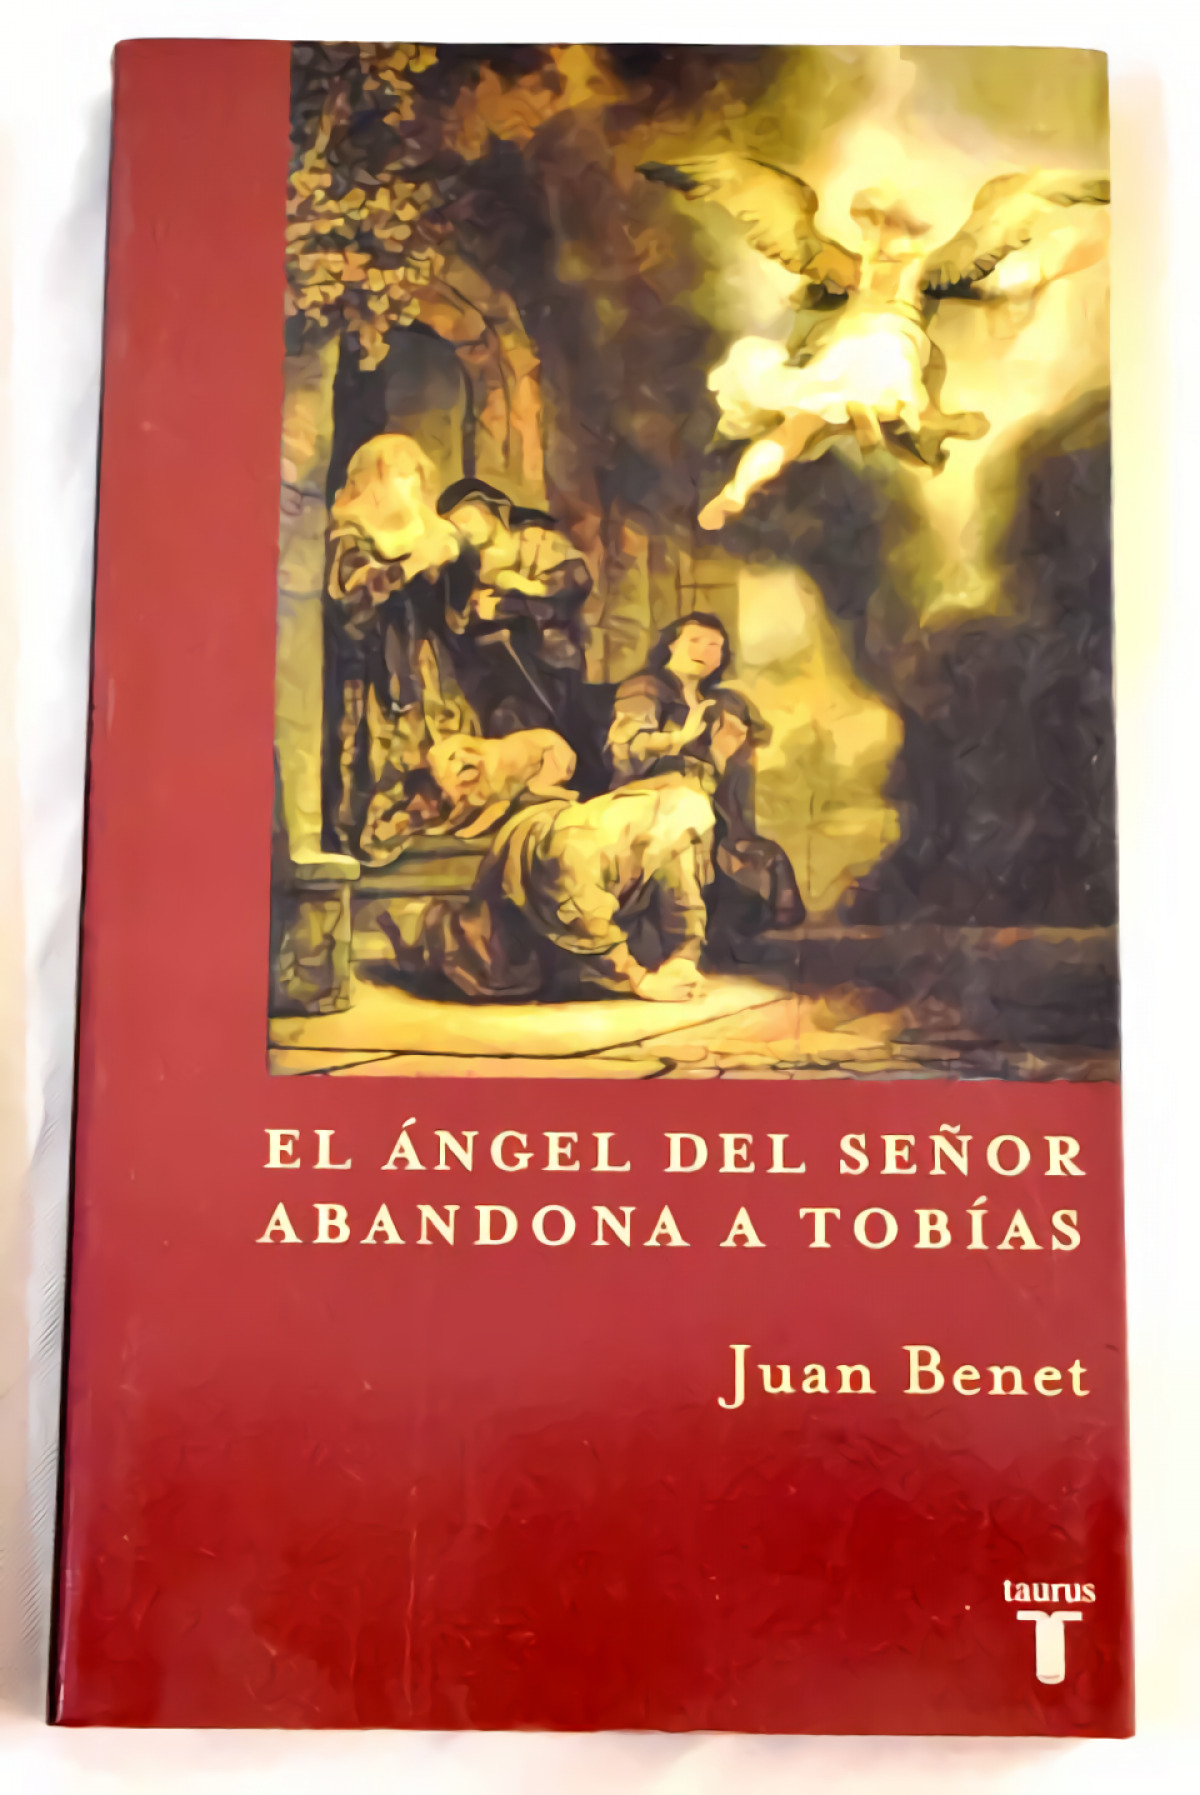 El angel del señor abandona a tobias - Benet Goitia, Juan